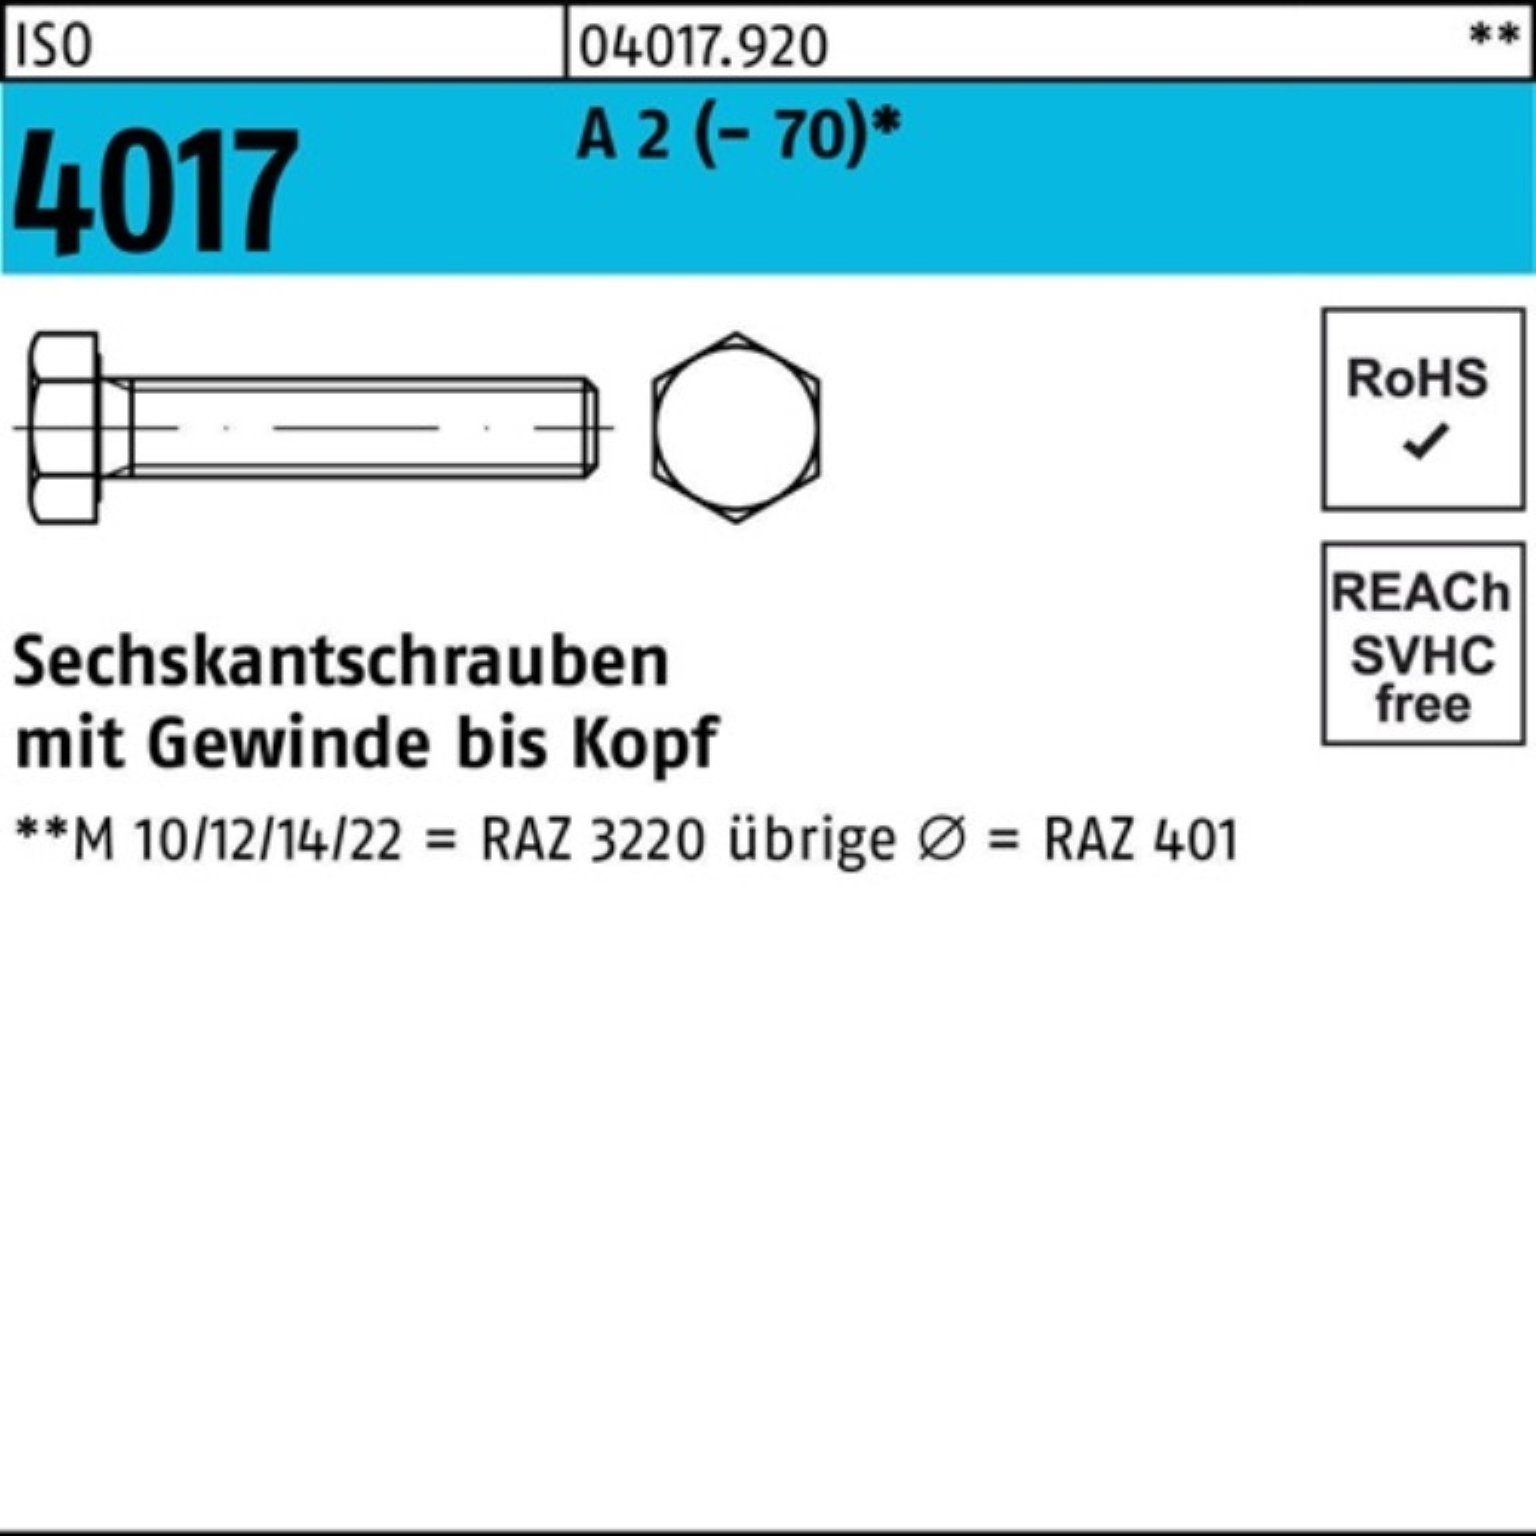 (70) Sechskantschraube A 2 Bufab 4017 Sechskantschraube M16x Pack ISO VG 100er 50 50 Stück